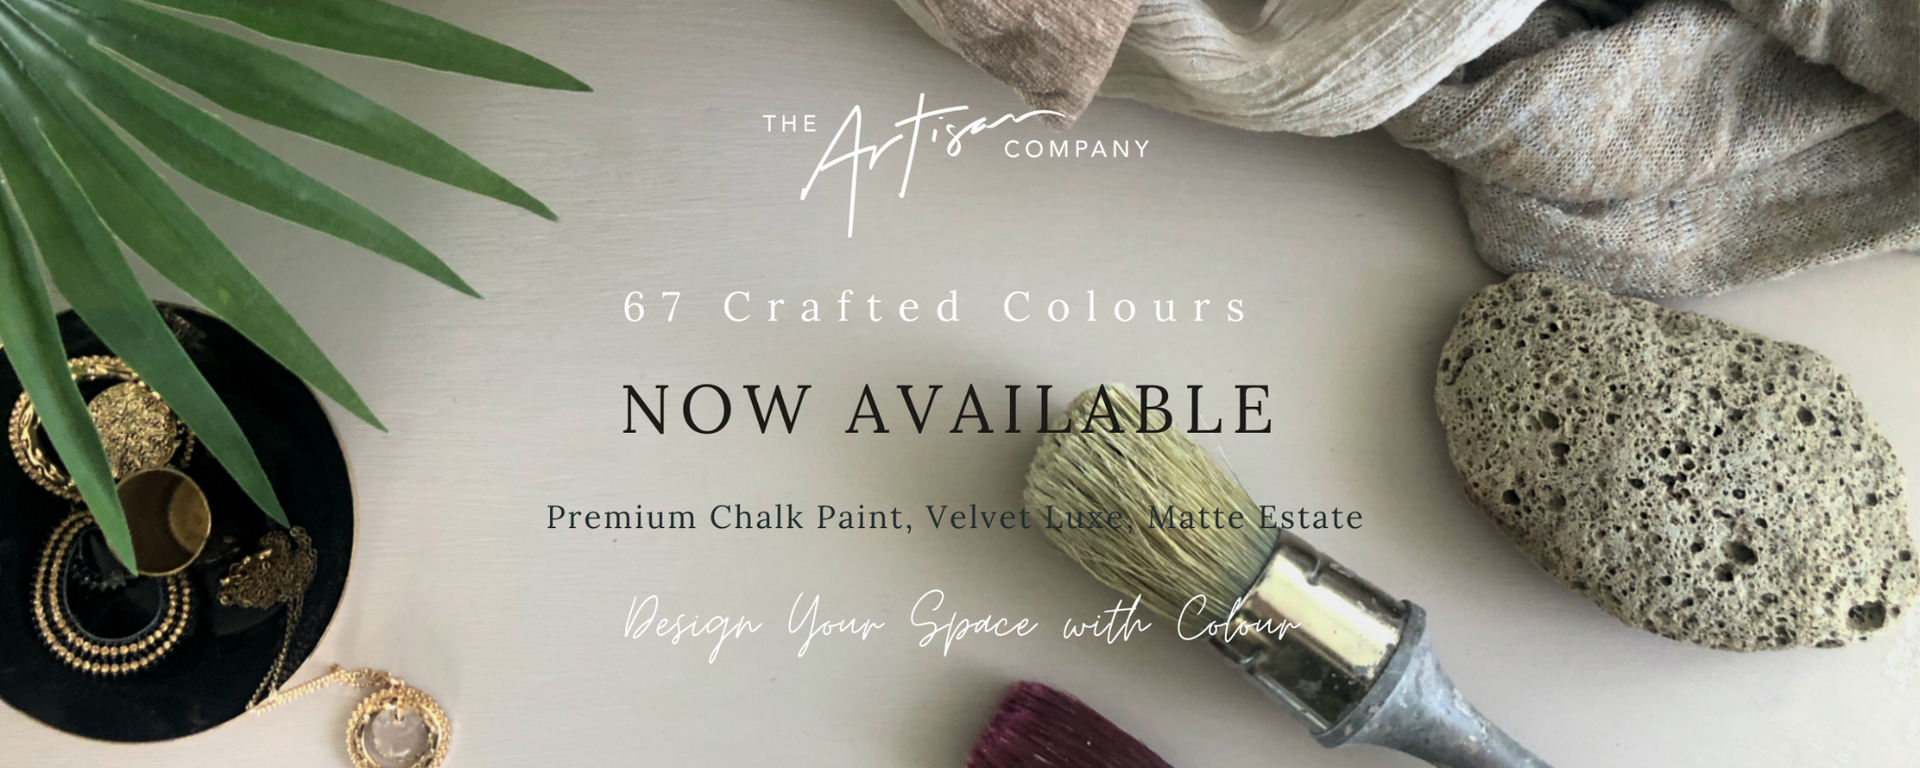 67 Premium Chalk Paint Colours